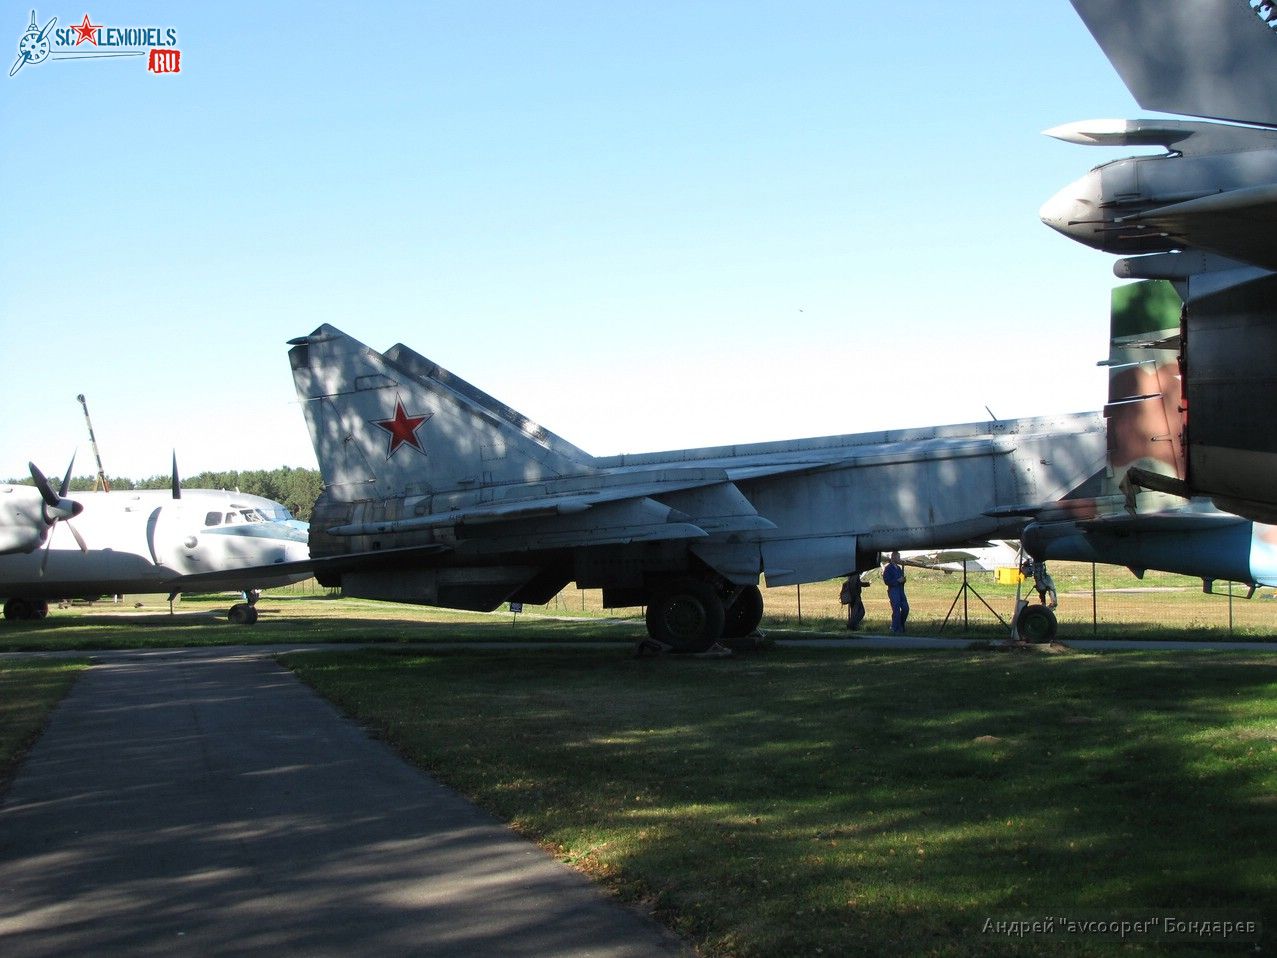 563_MiG-25BM_Borovaya_avcooper.JPG